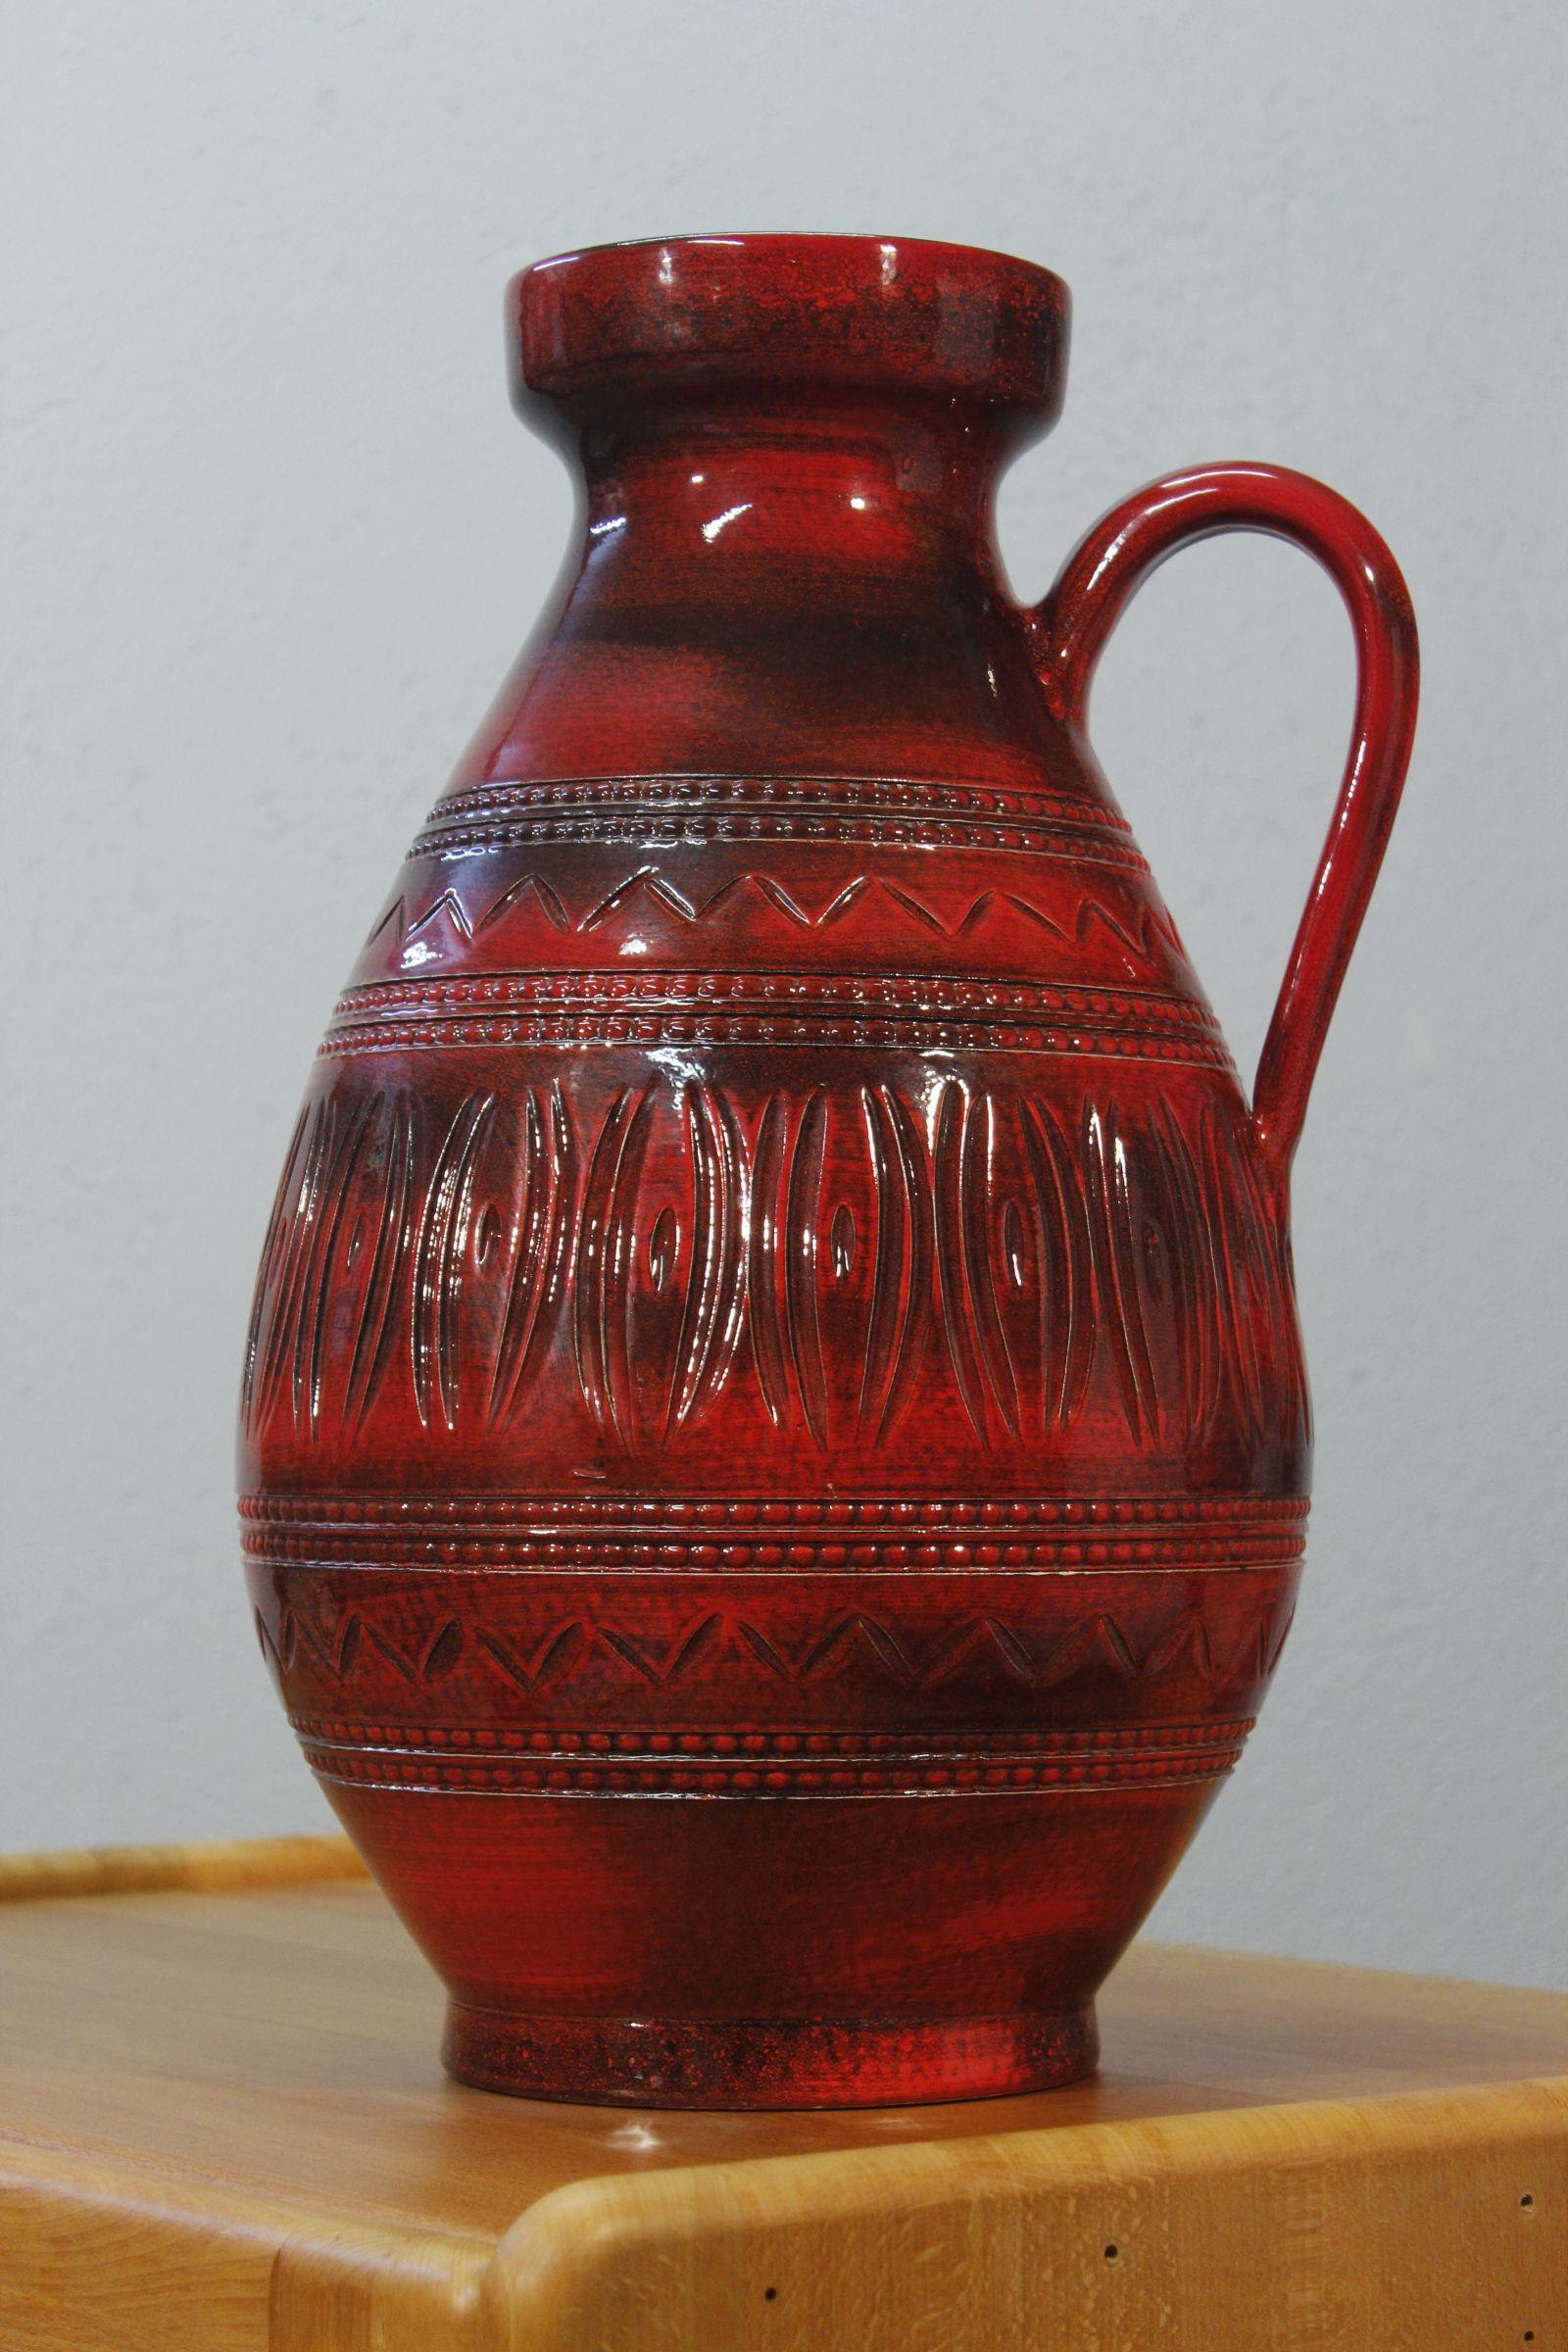 Ilkra Edel Keramik grand vase de sol avec anse, avec des motifs scarifiés et un émail rouge et noir profond. 

En très bon état général